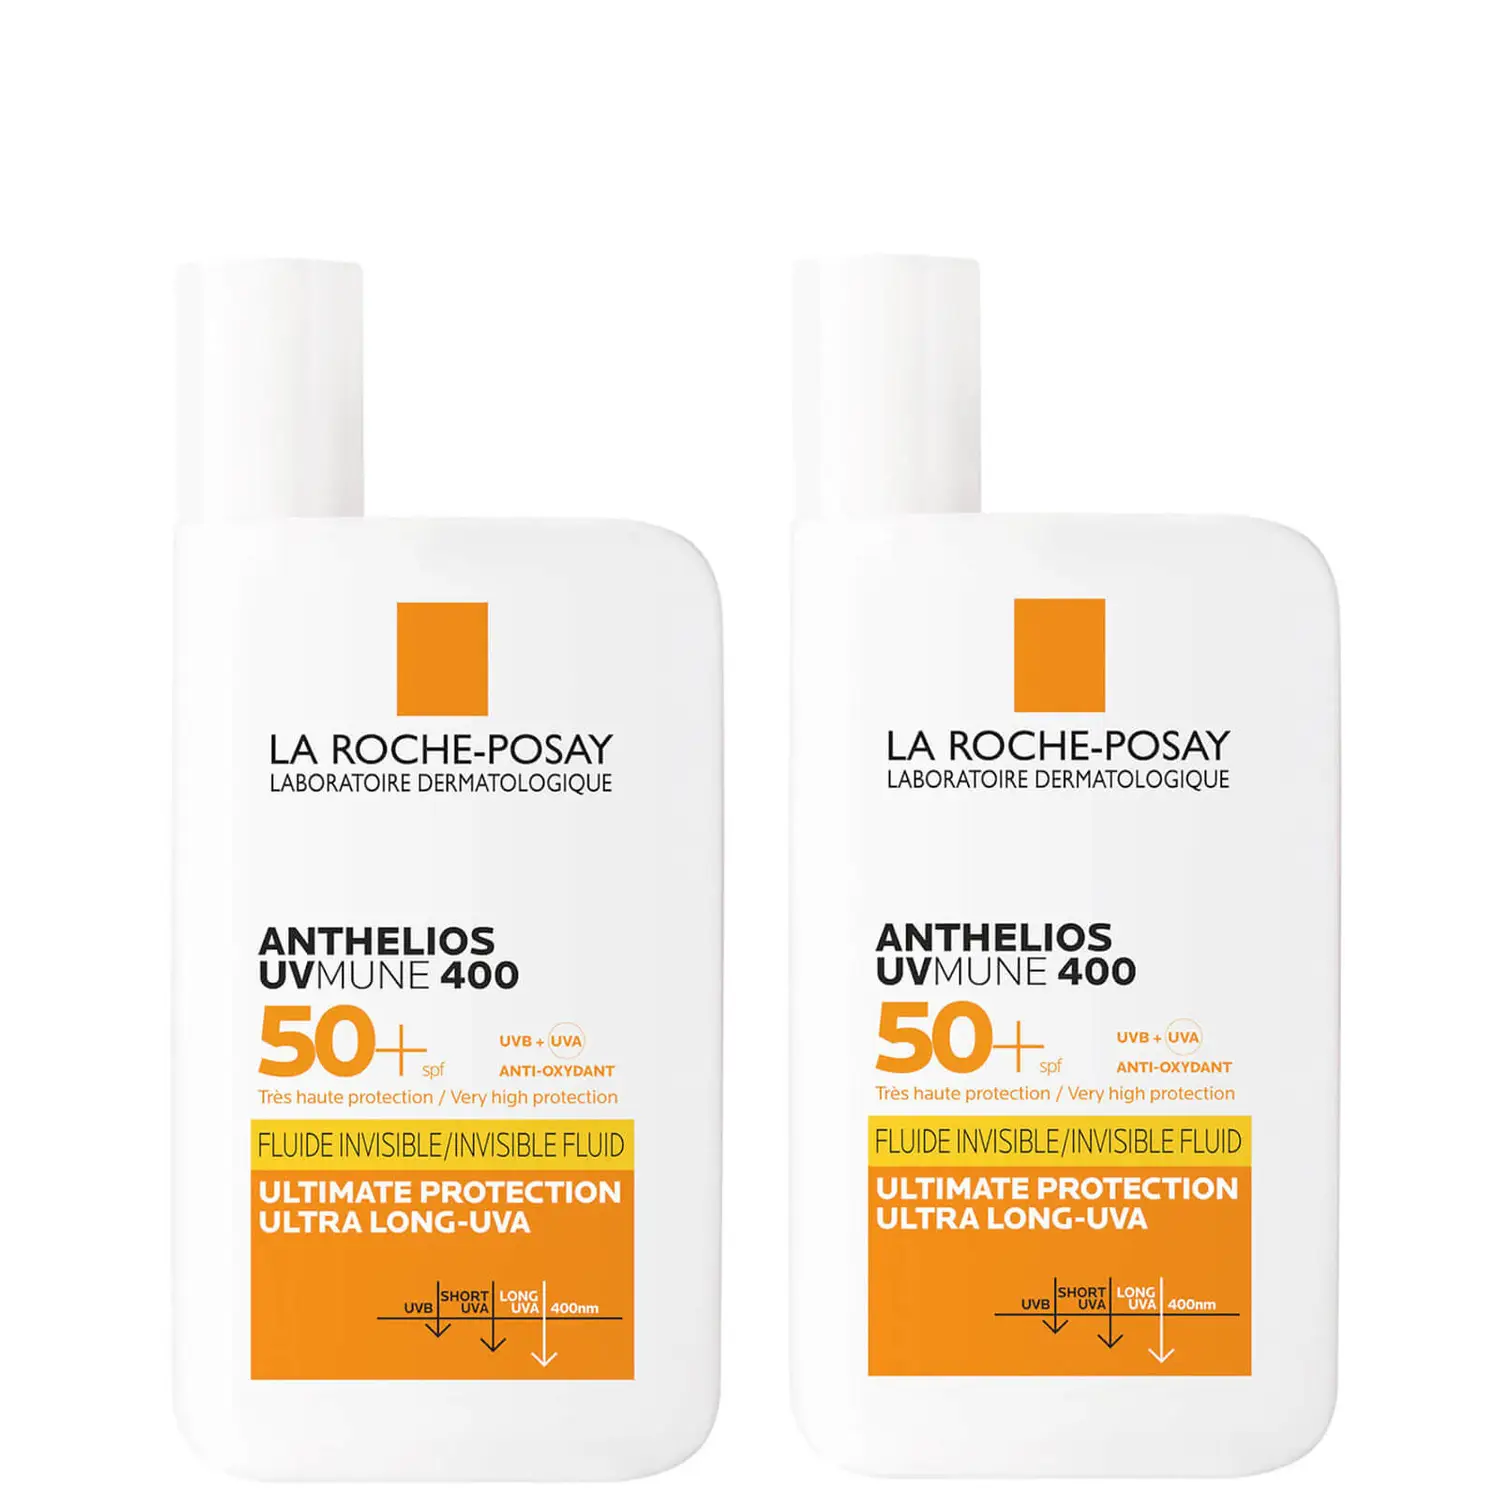 La Roche-Posay Anthelios UVMune 400 Invisible Fluid SPF50+ Sun Cream Duo 5